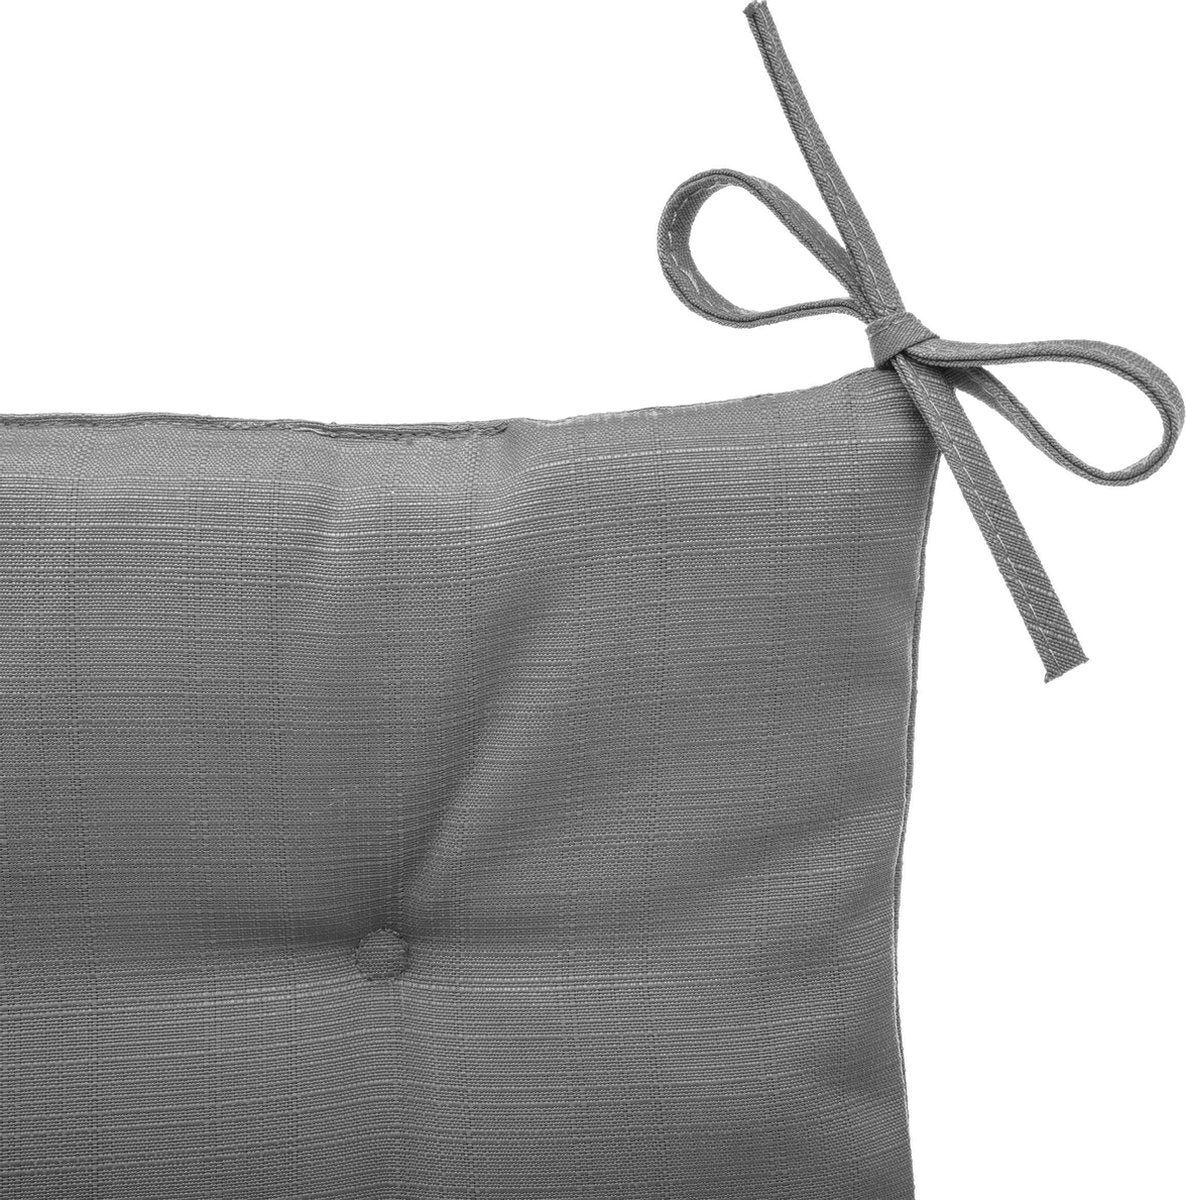 Hesperide Stoelkussens Korai grijs met lintjes - Waterafstotend - Afneembare hoes - 4 knopen - 40 x 40 cm